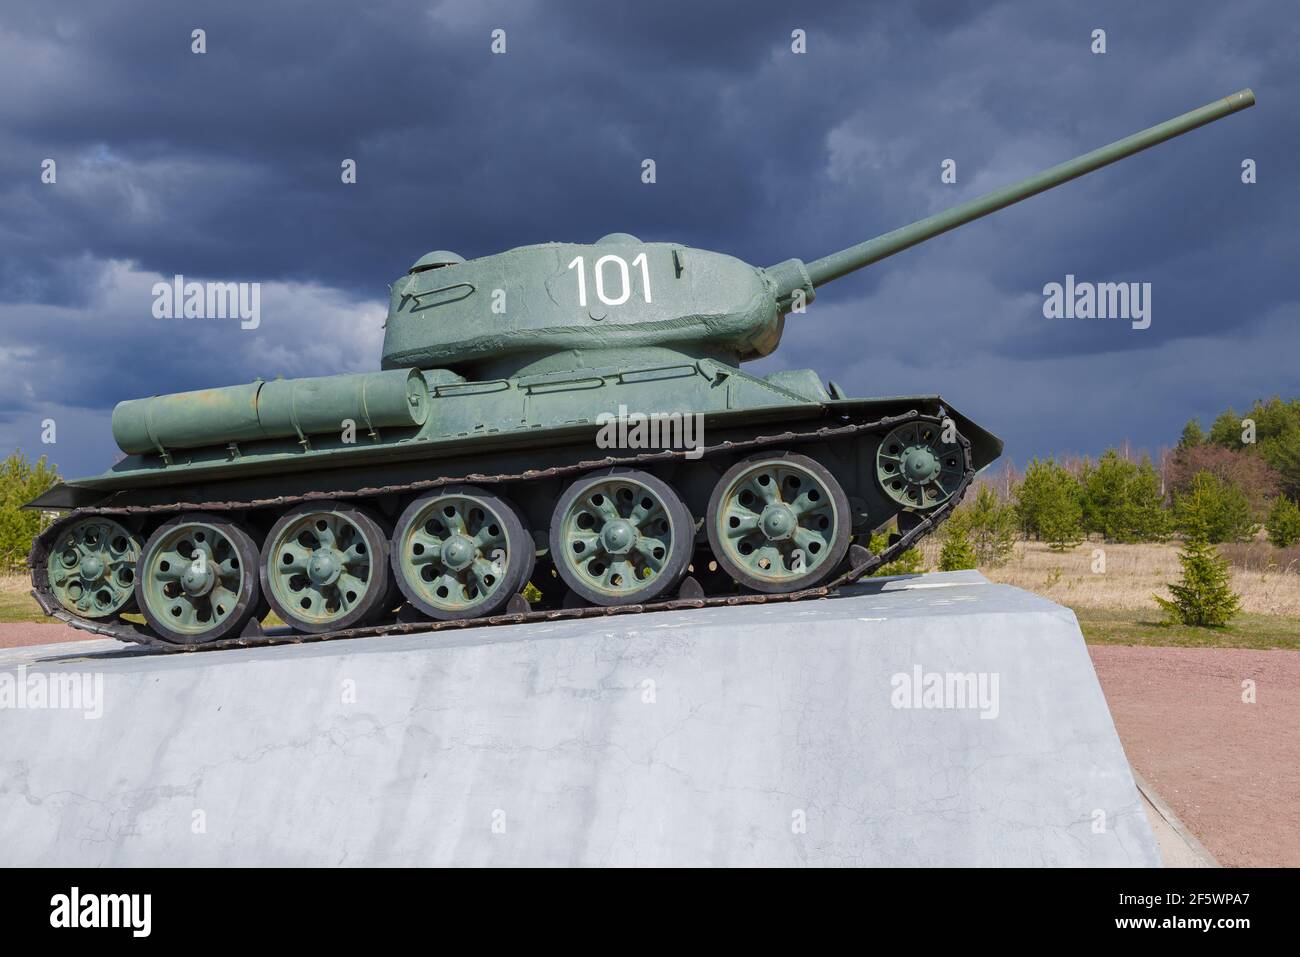 KIROWSK, RUSSLAND - 26. AUGUST 2020: Panzer T-34-85 unter stürmischem Himmel an einem Apriltag. Fragment des Denkmals "Newski Pjatachok". Leningrad Stockfoto